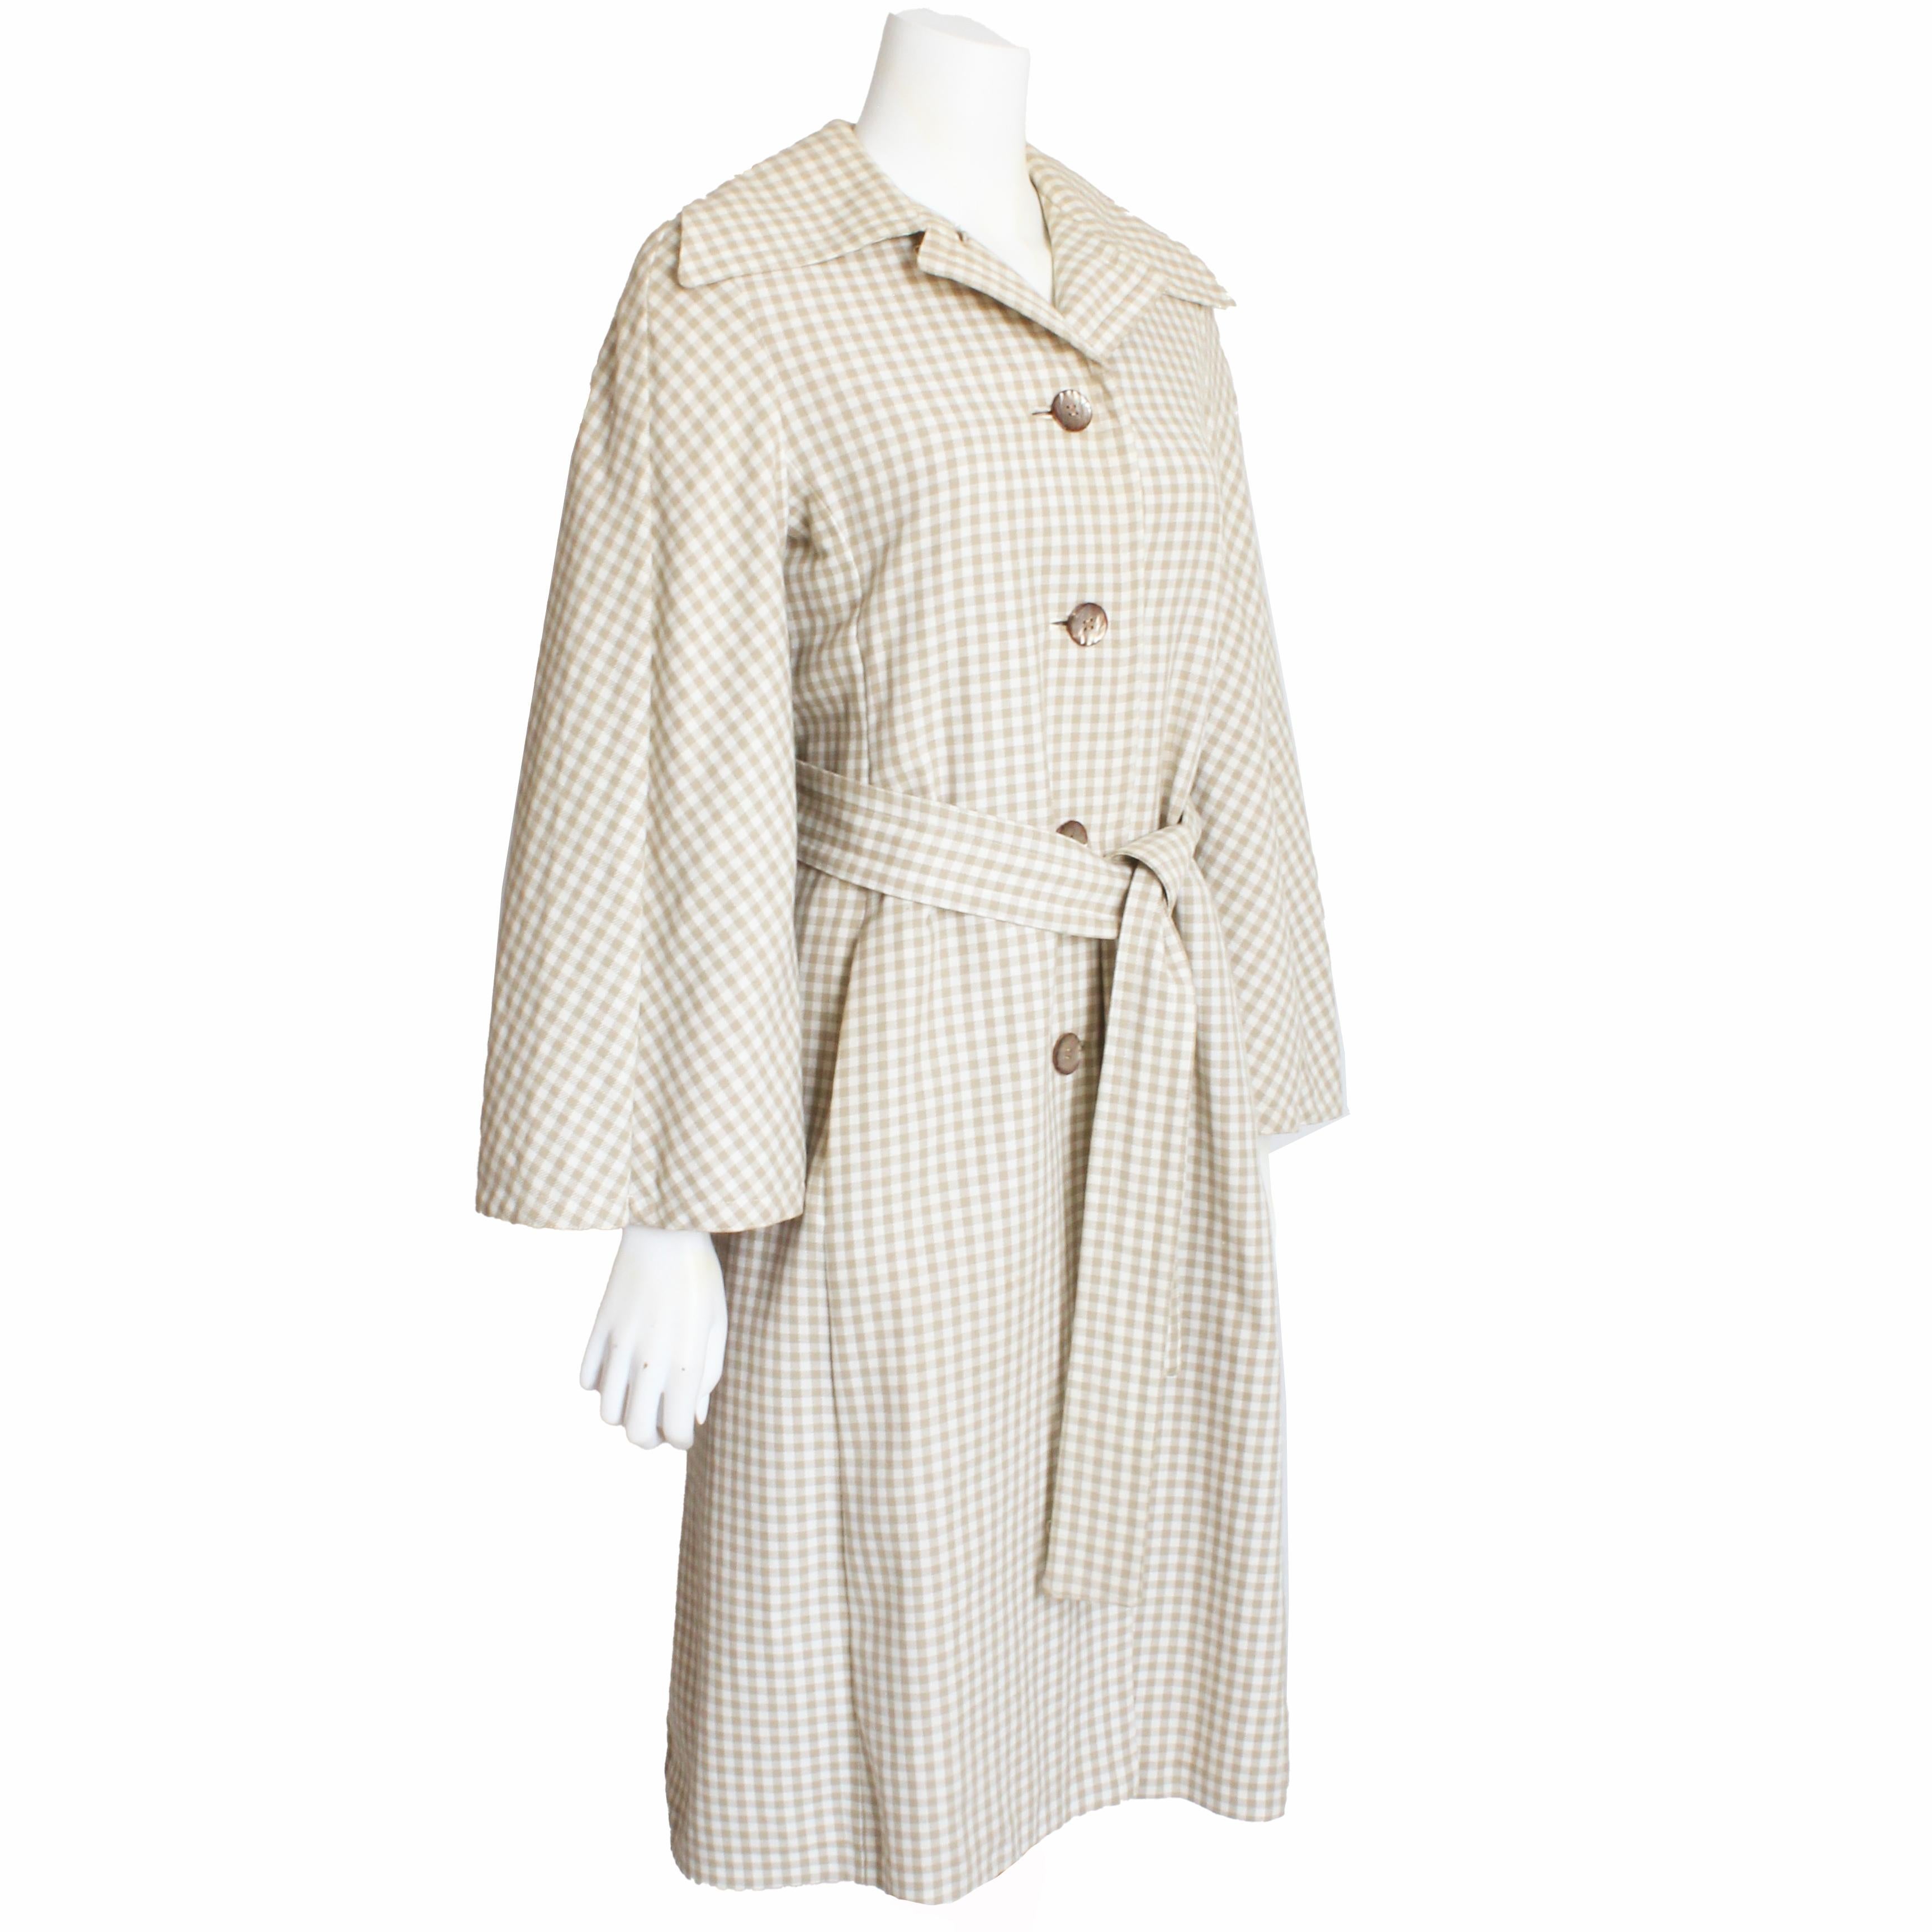 Authentique, d'occasion, manteau ou veste vintage Donald Brooks de style trench avec capuchon/cape attaché, circa 70s. Confectionné dans un tissu léger à carreaux blancs et fauves, il se ferme par des boutons et s'accompagne d'une ceinture à